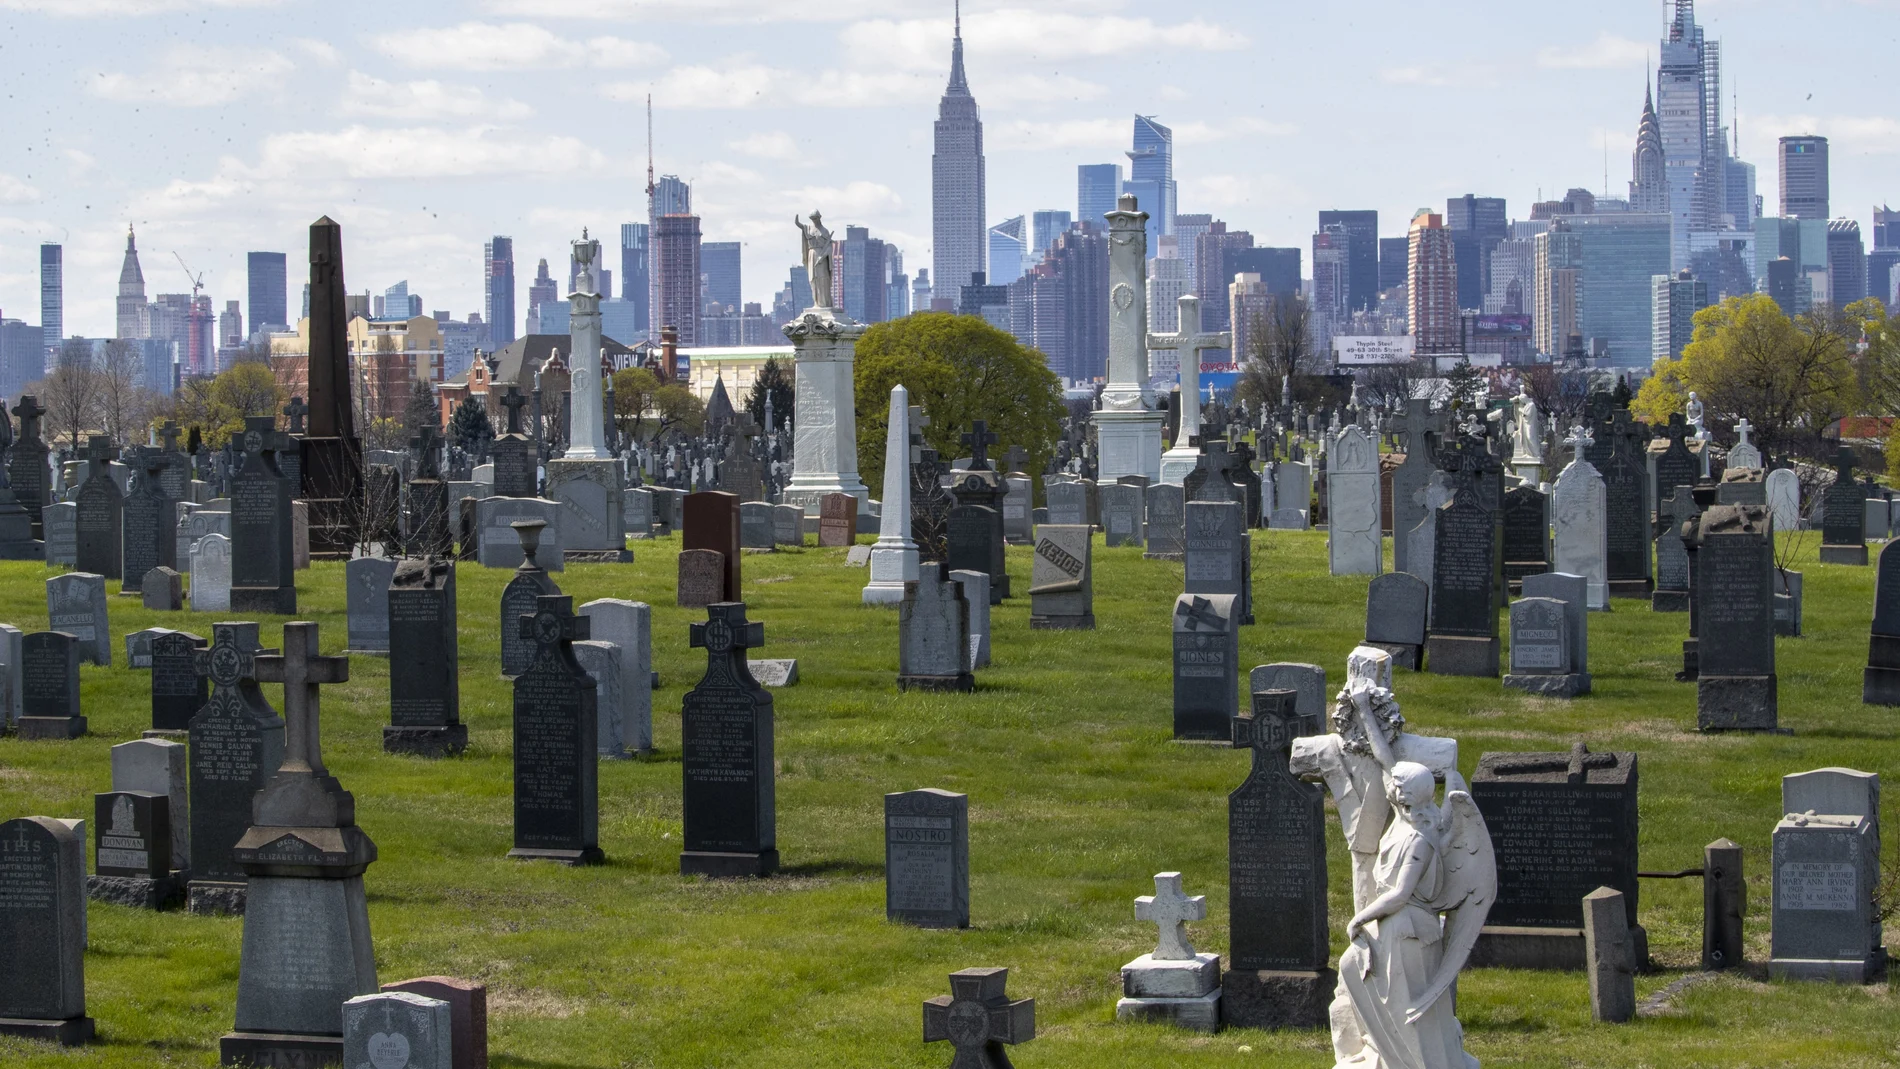 El skyline de Nueva York desde el cementerio de Queens una de las zonas más afectadas por el covid-19 con una alta incidencia entre los hispanos